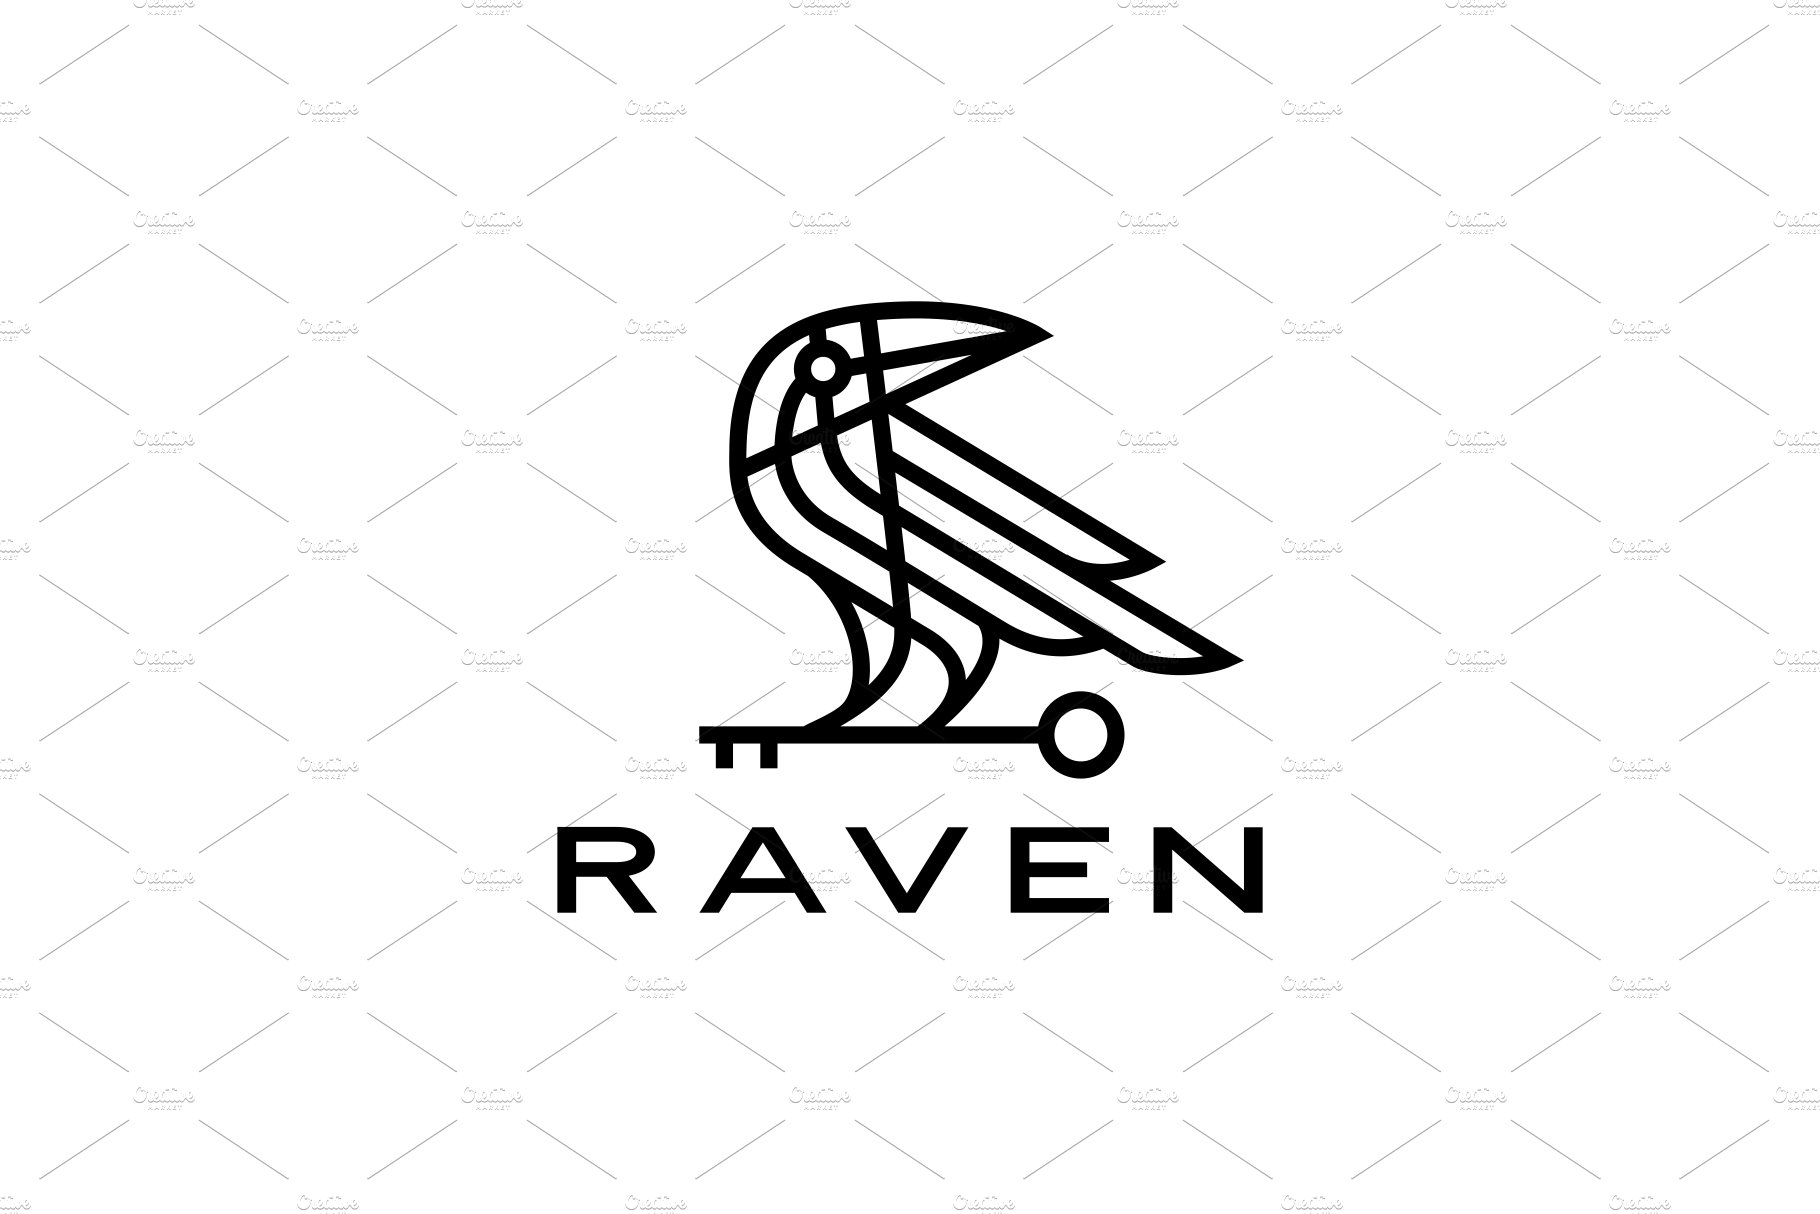 raven crow key black bird monoline cover image.